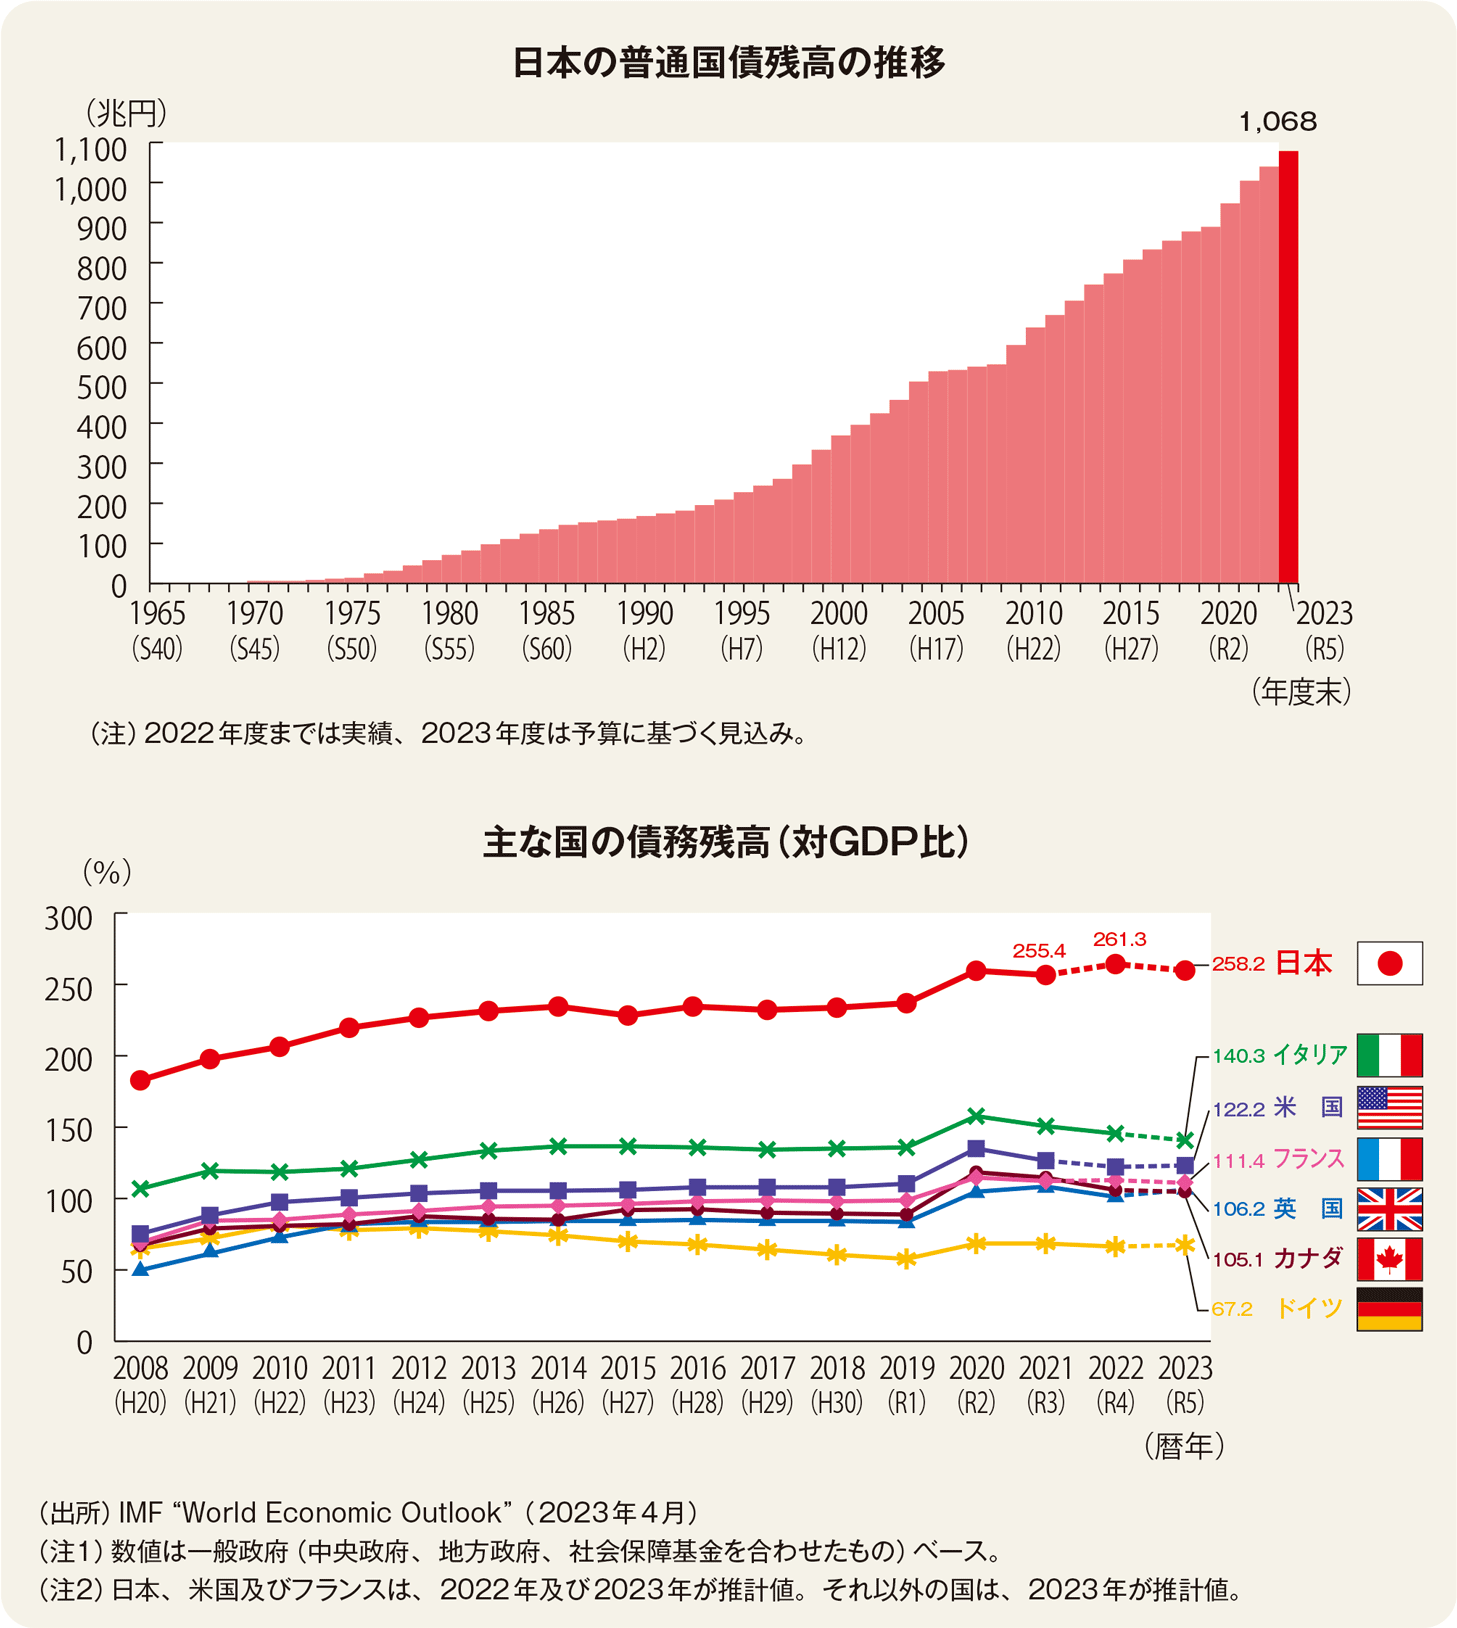 図・1965年から2023年までの日本の普通国際残高の推移のグラフと2008年から2023年までの主な国の債務残高のグラフ